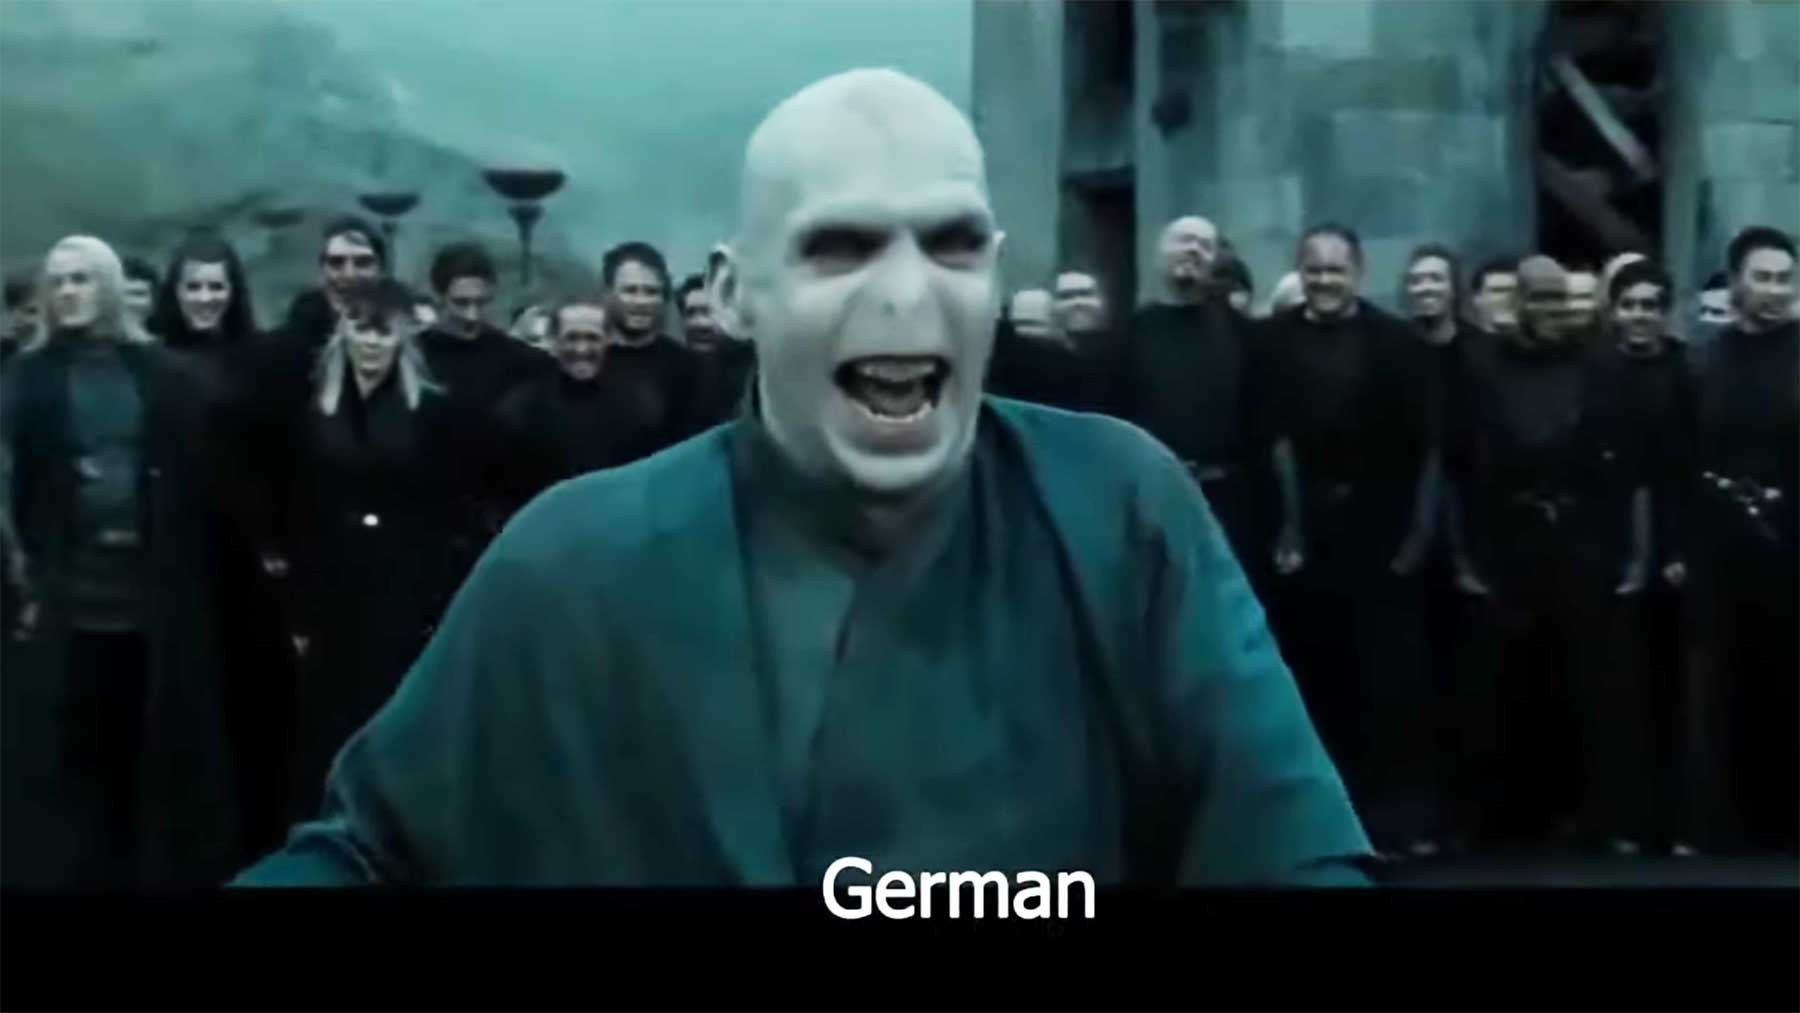 Voldemorts Lachen in 11 unterschiedlichen Sprachen